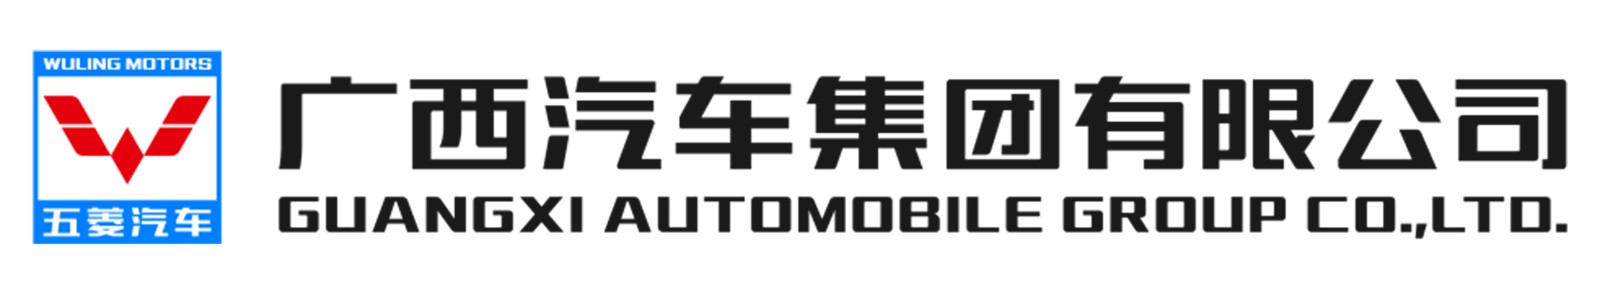 GUANGXI AUTOMOBILE GROUP CO.,LTD.